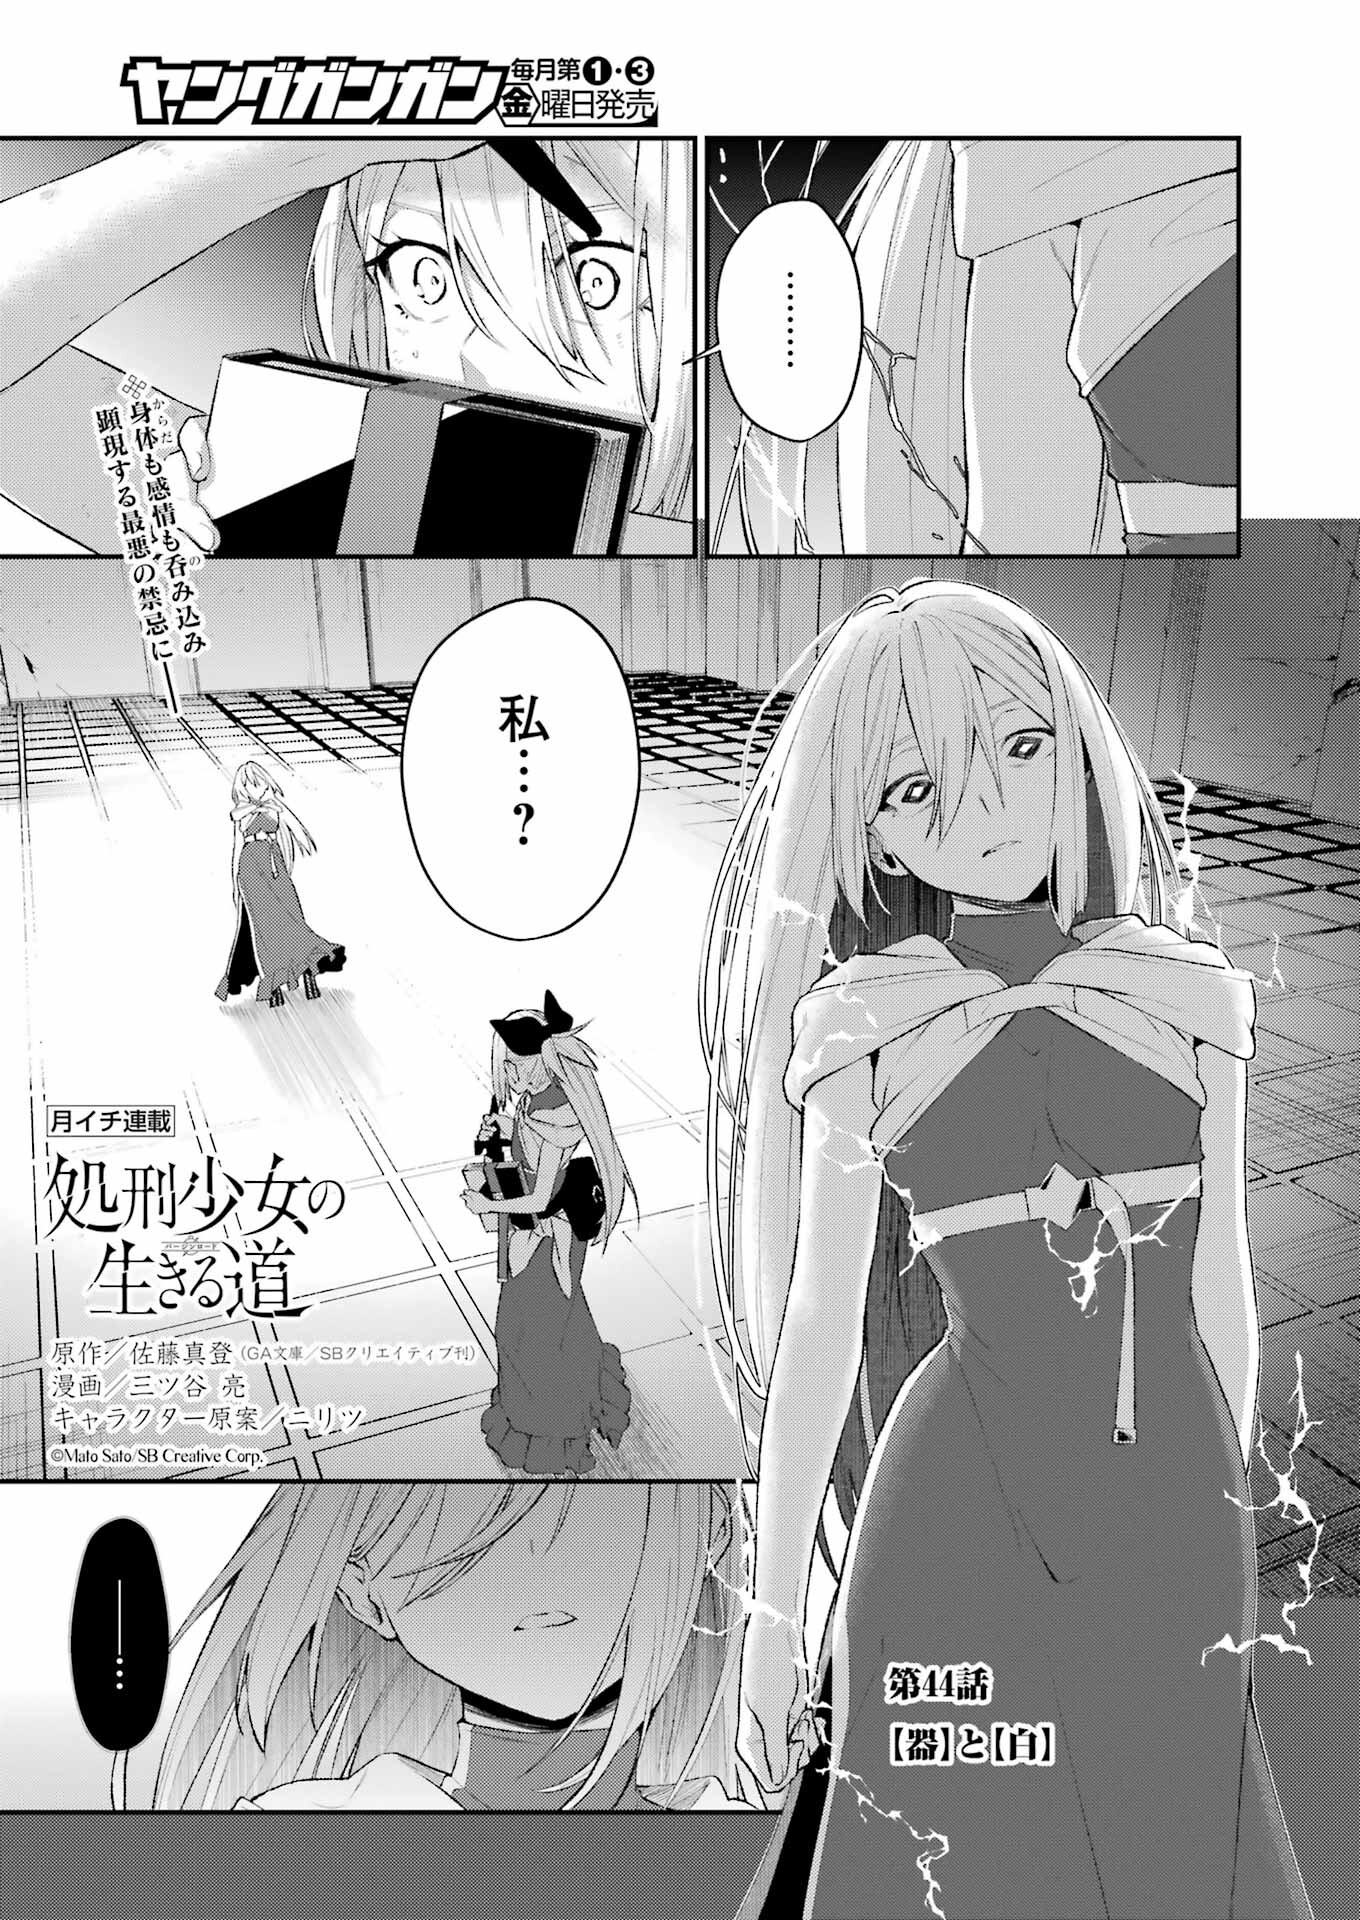 Shokei Shoujo no Ikiru Michi - Chapter 44 - Page 1